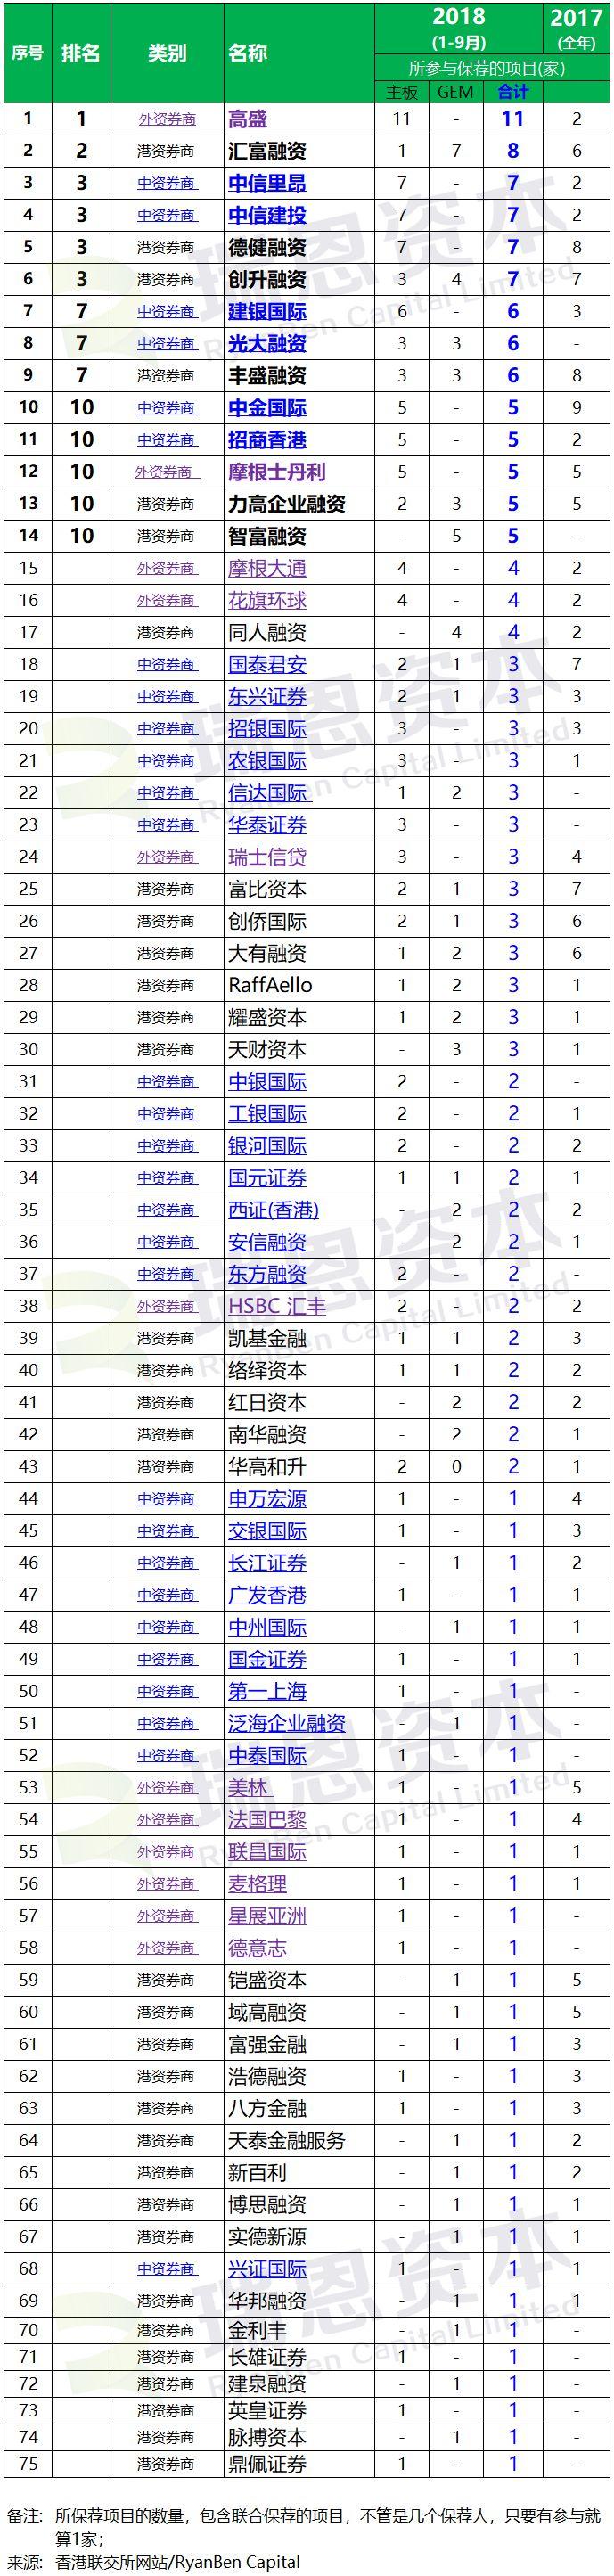 香港IPO上市中介團隊.券商保薦人排行榜 (2018年前三季)